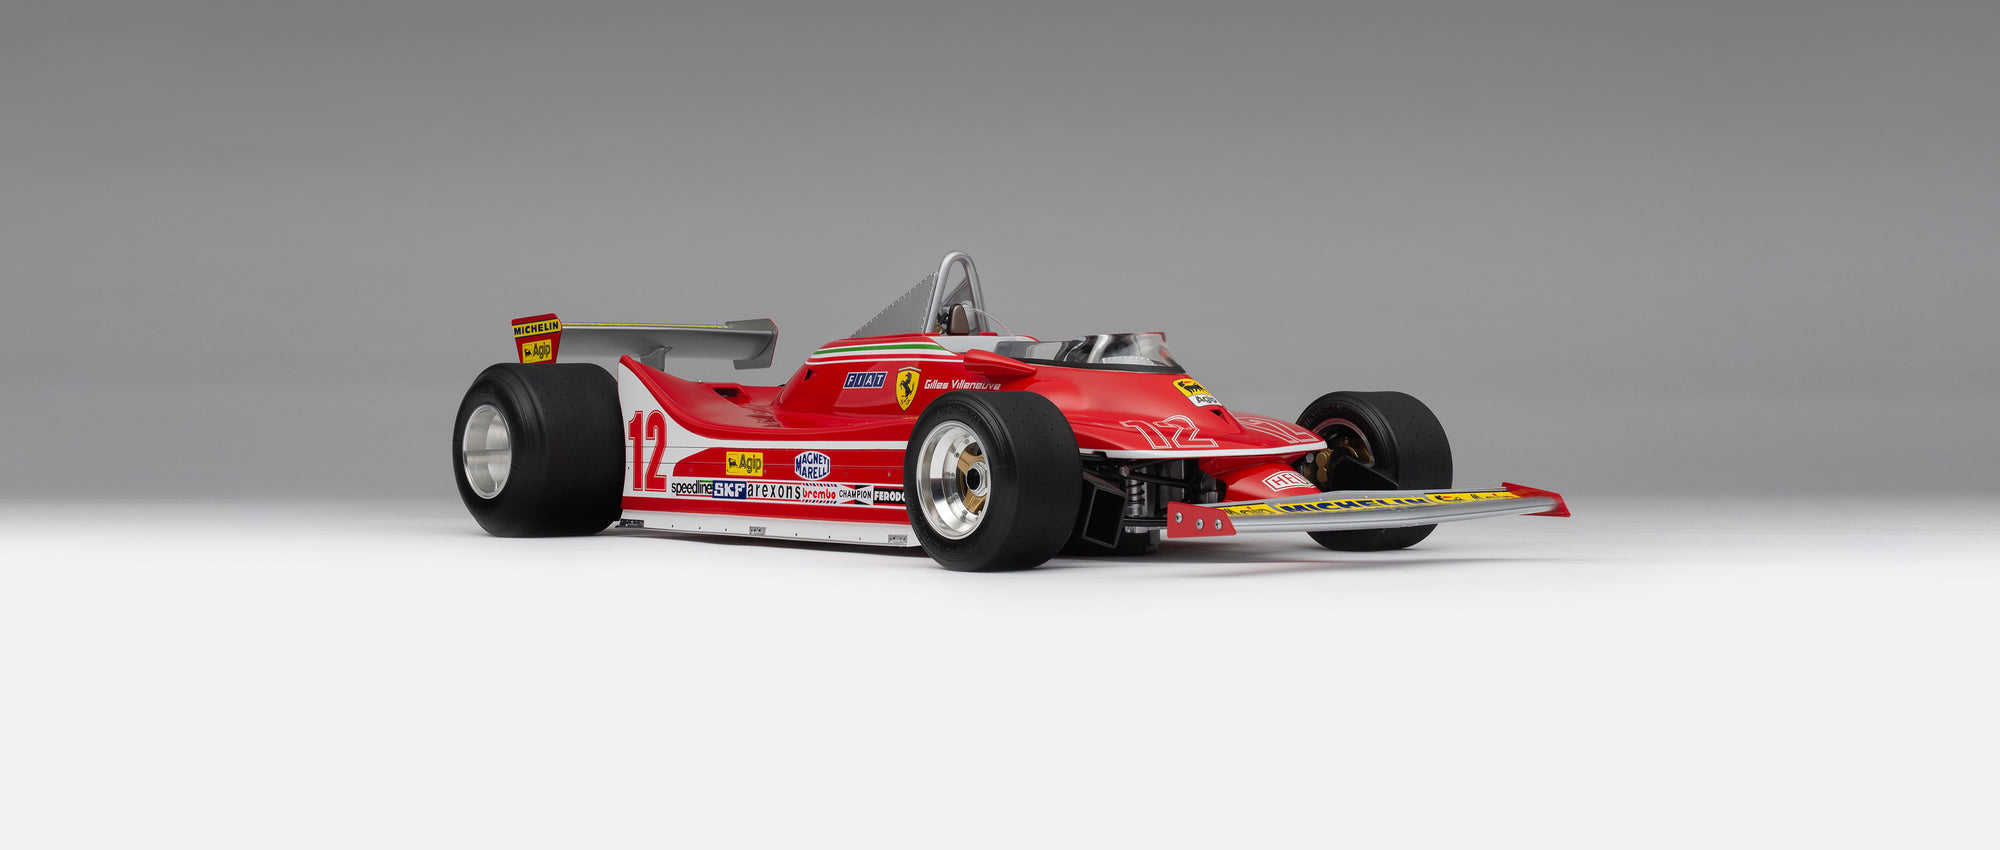 Ferrari 312 T4 - 1979 US East GP Winner - Villeneuve